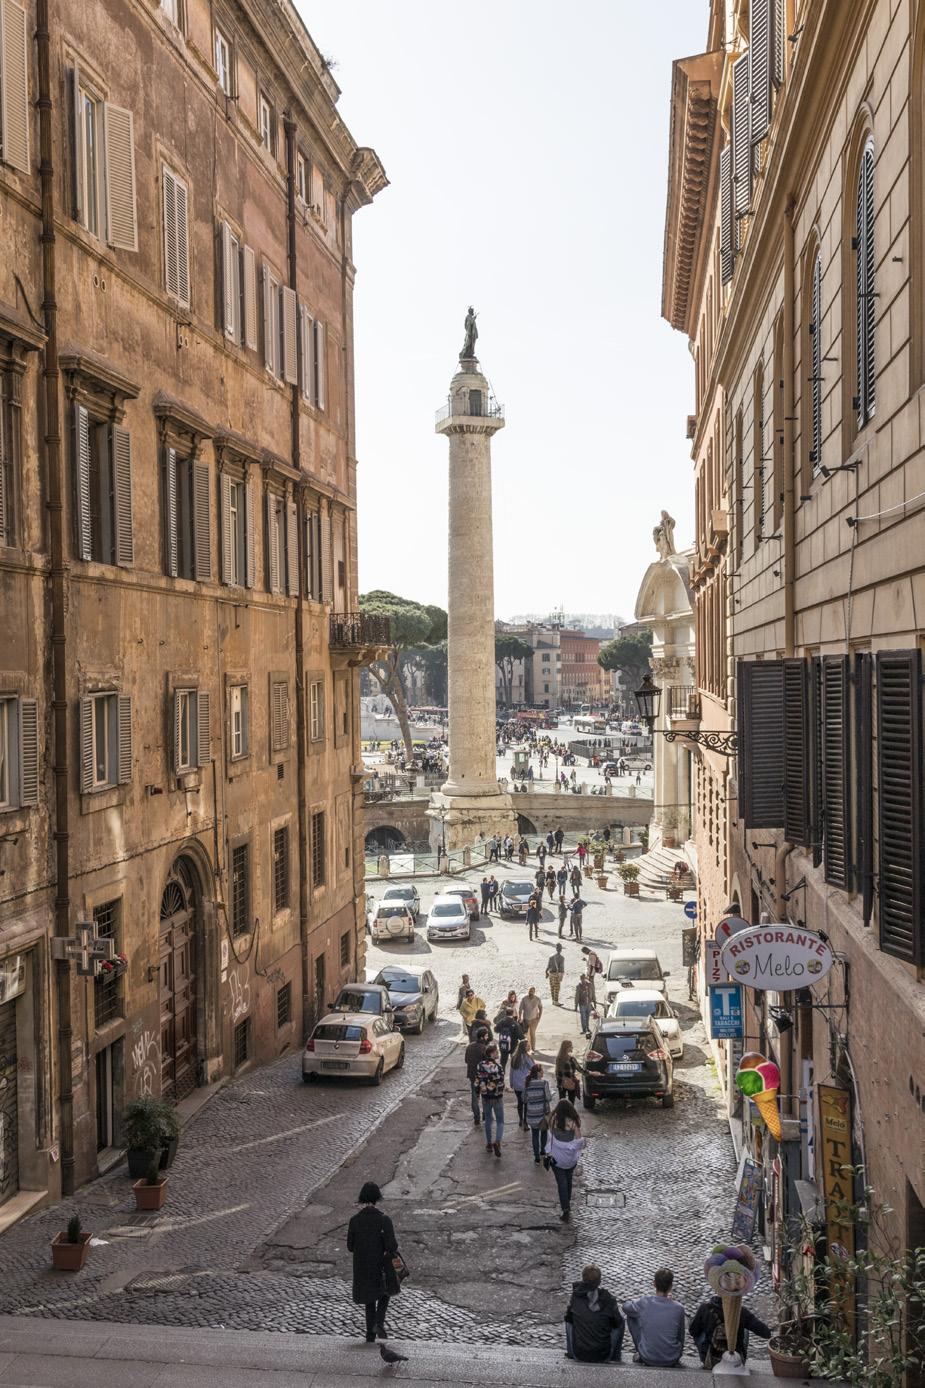 Liikkuminen Roomassa Kaupungin tunnetuimmat nähtävyydet sijaitsevat melko kompaktisti kävelymatkan päässä toisistaan, joten niihin on helppo tutustua jalan.